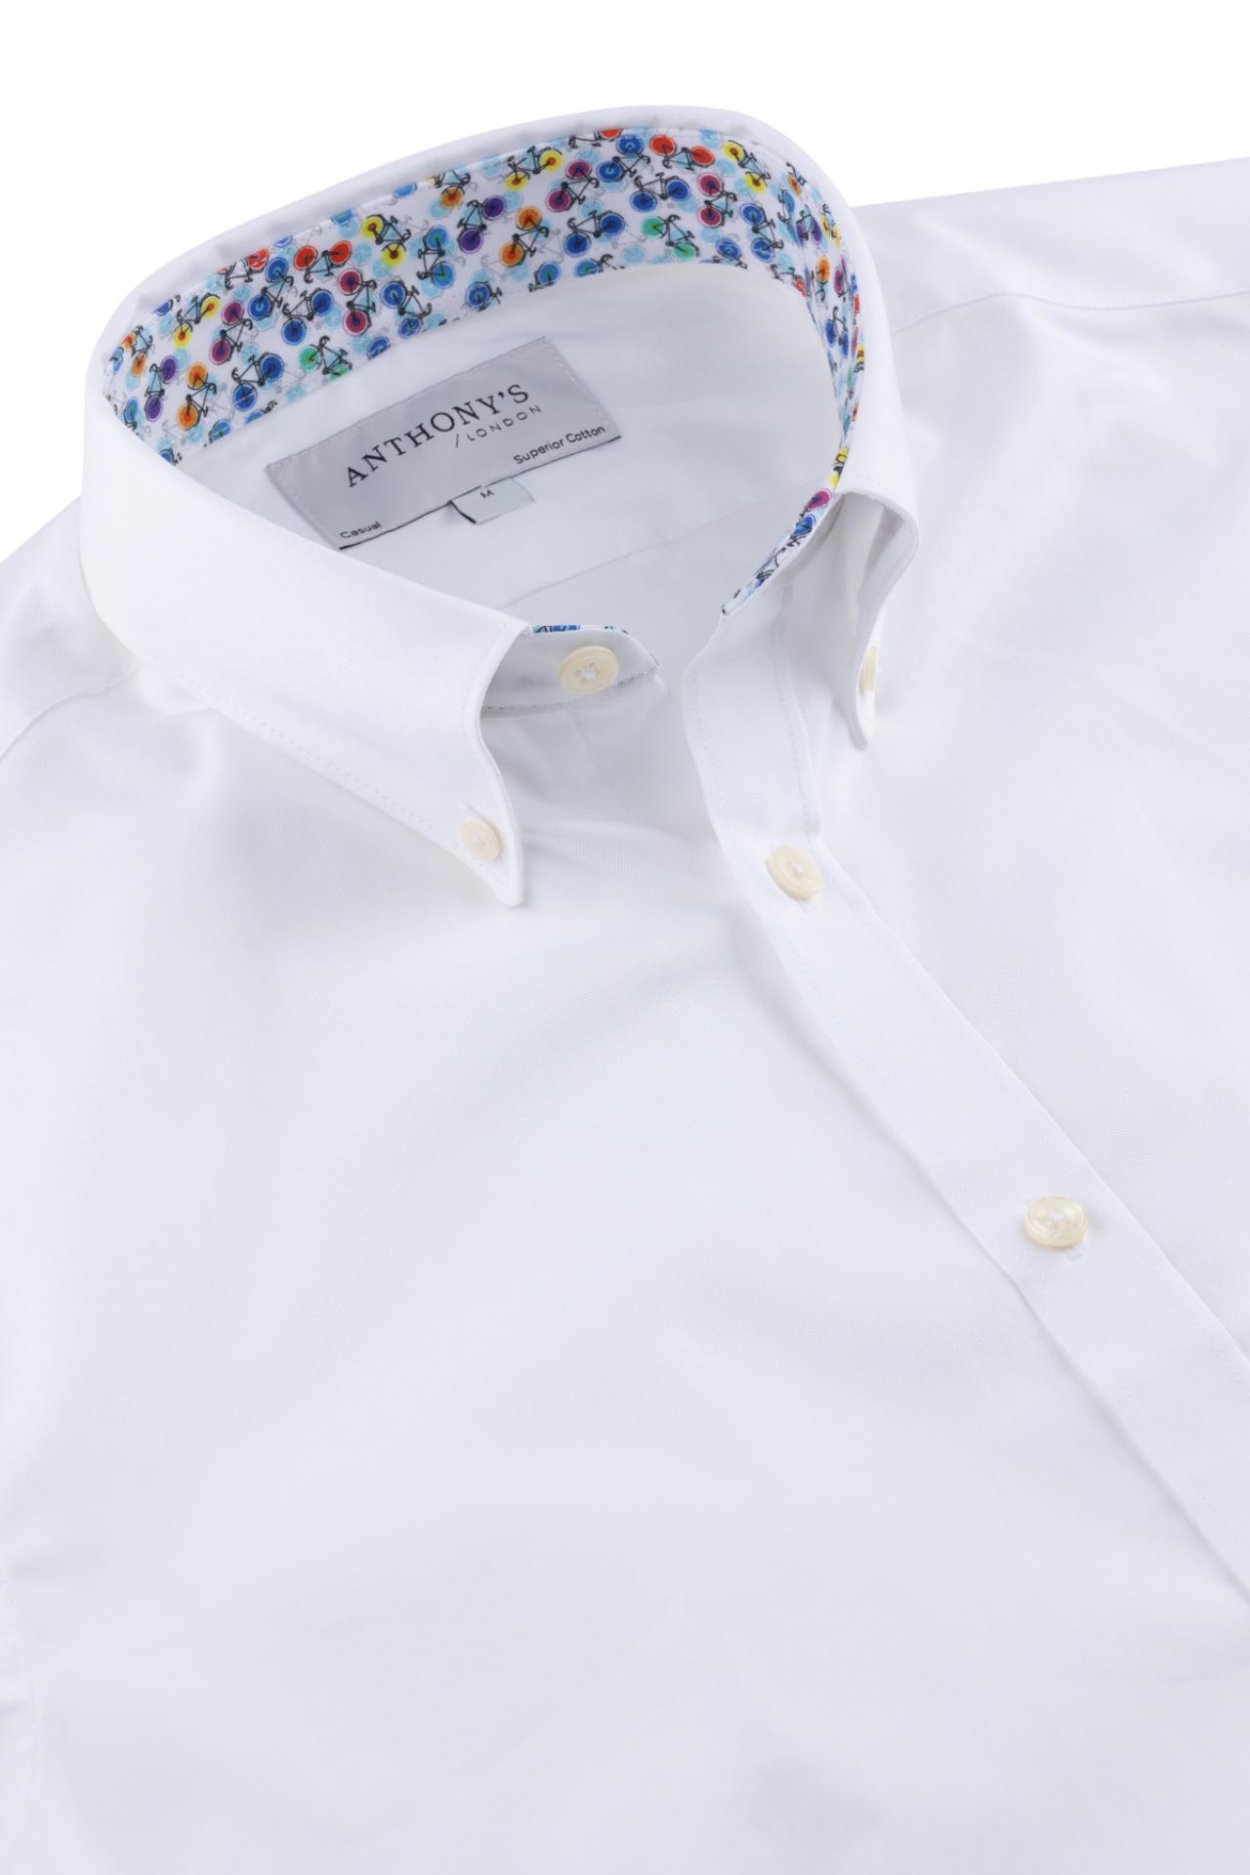 Pánská bílá košile s barevným detailem